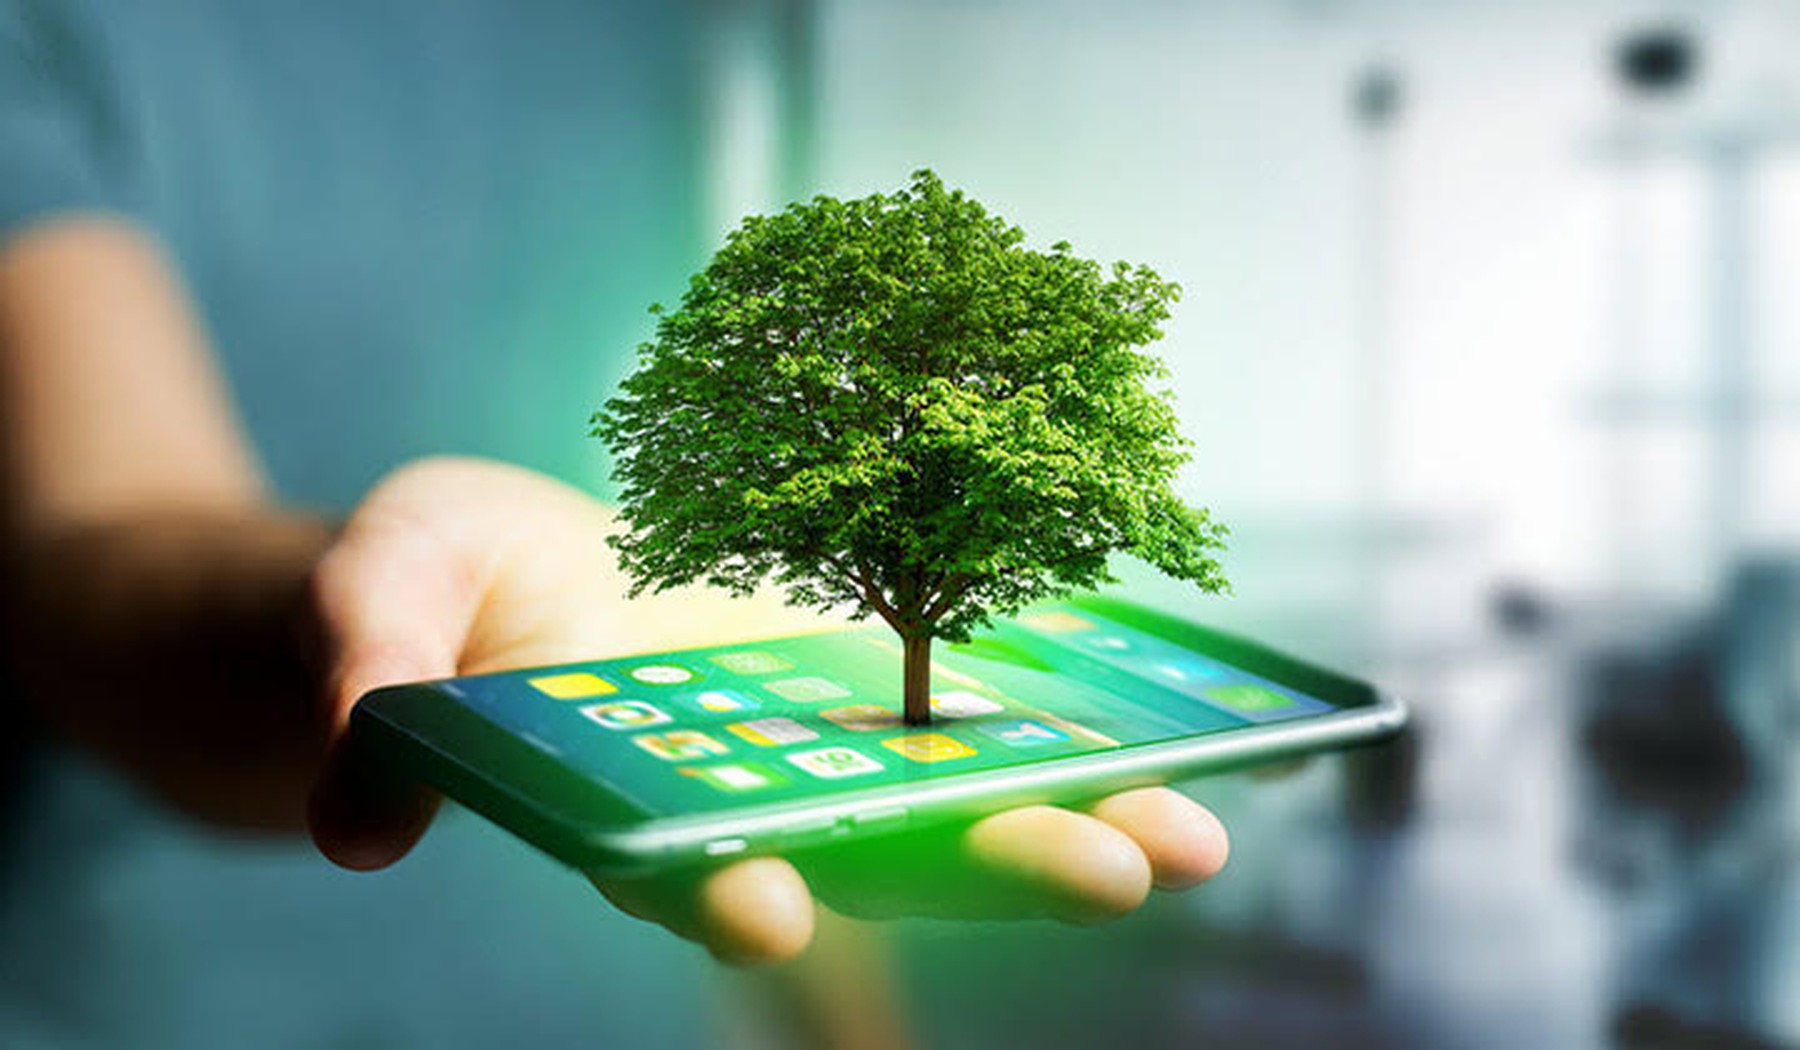 Een groen boompje dat uit een smartphone komt